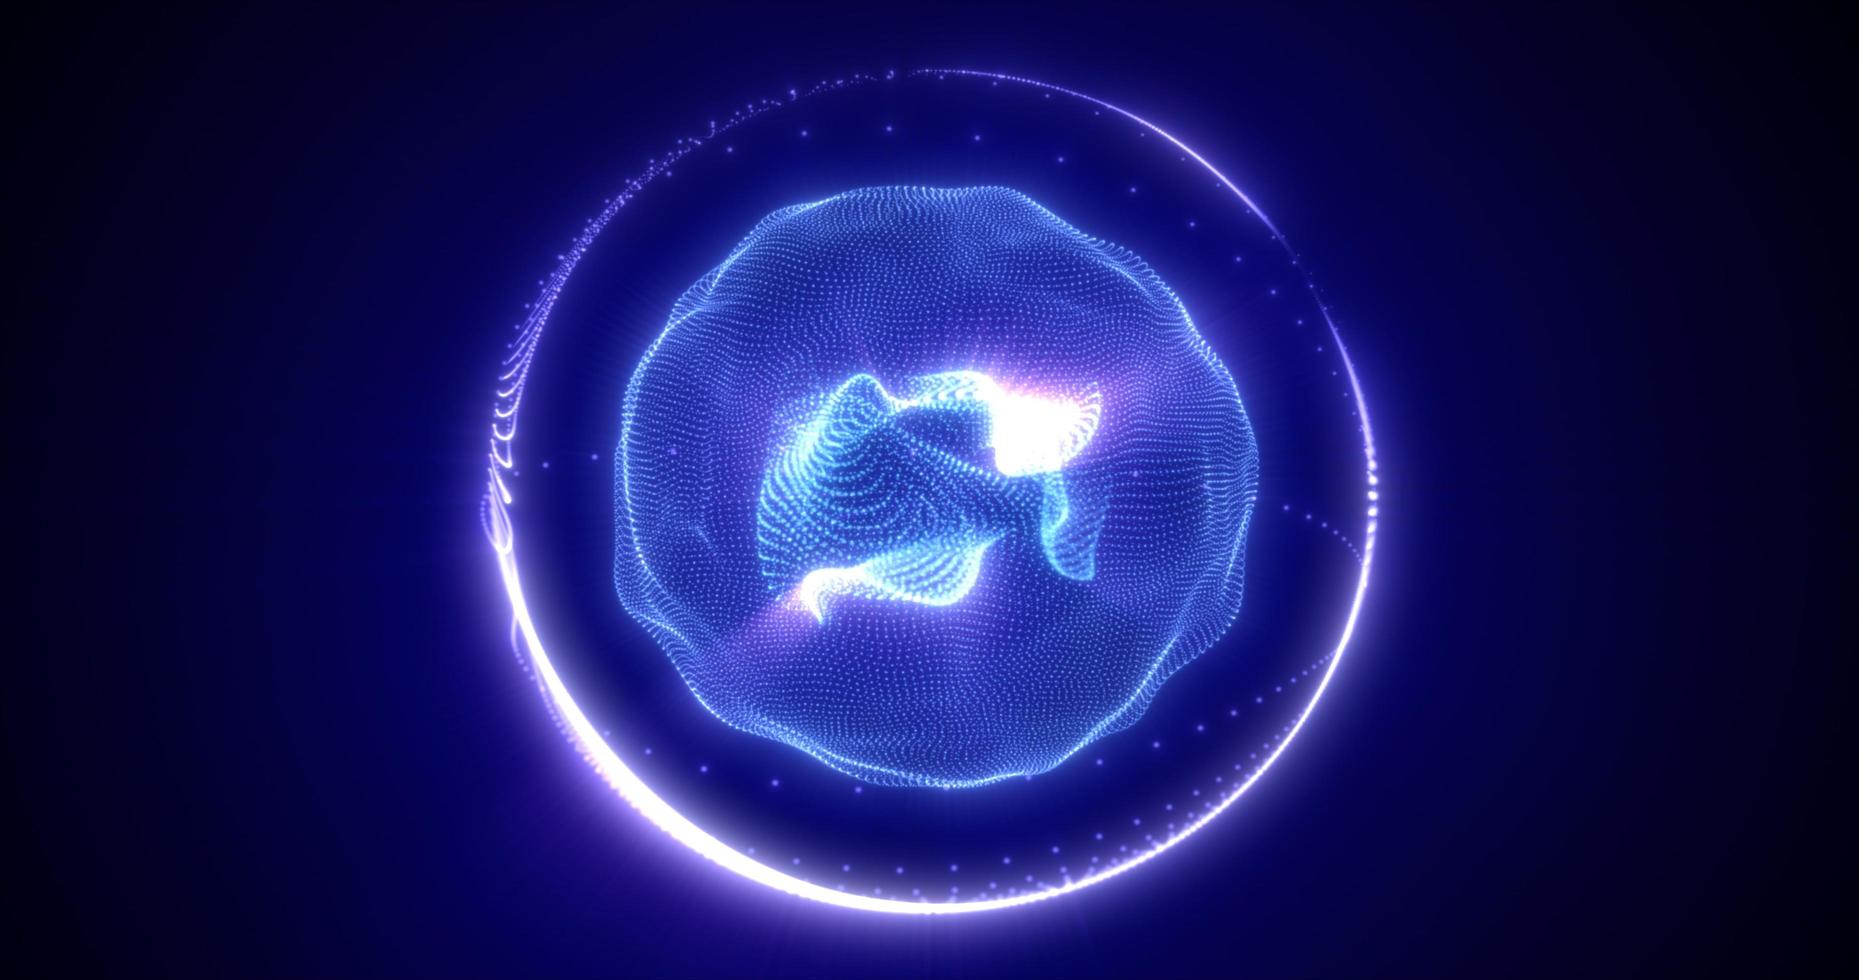 abstrakt Blau Energie Kugel von Partikel und Wellen von magisch glühend auf ein dunkel Hintergrund foto